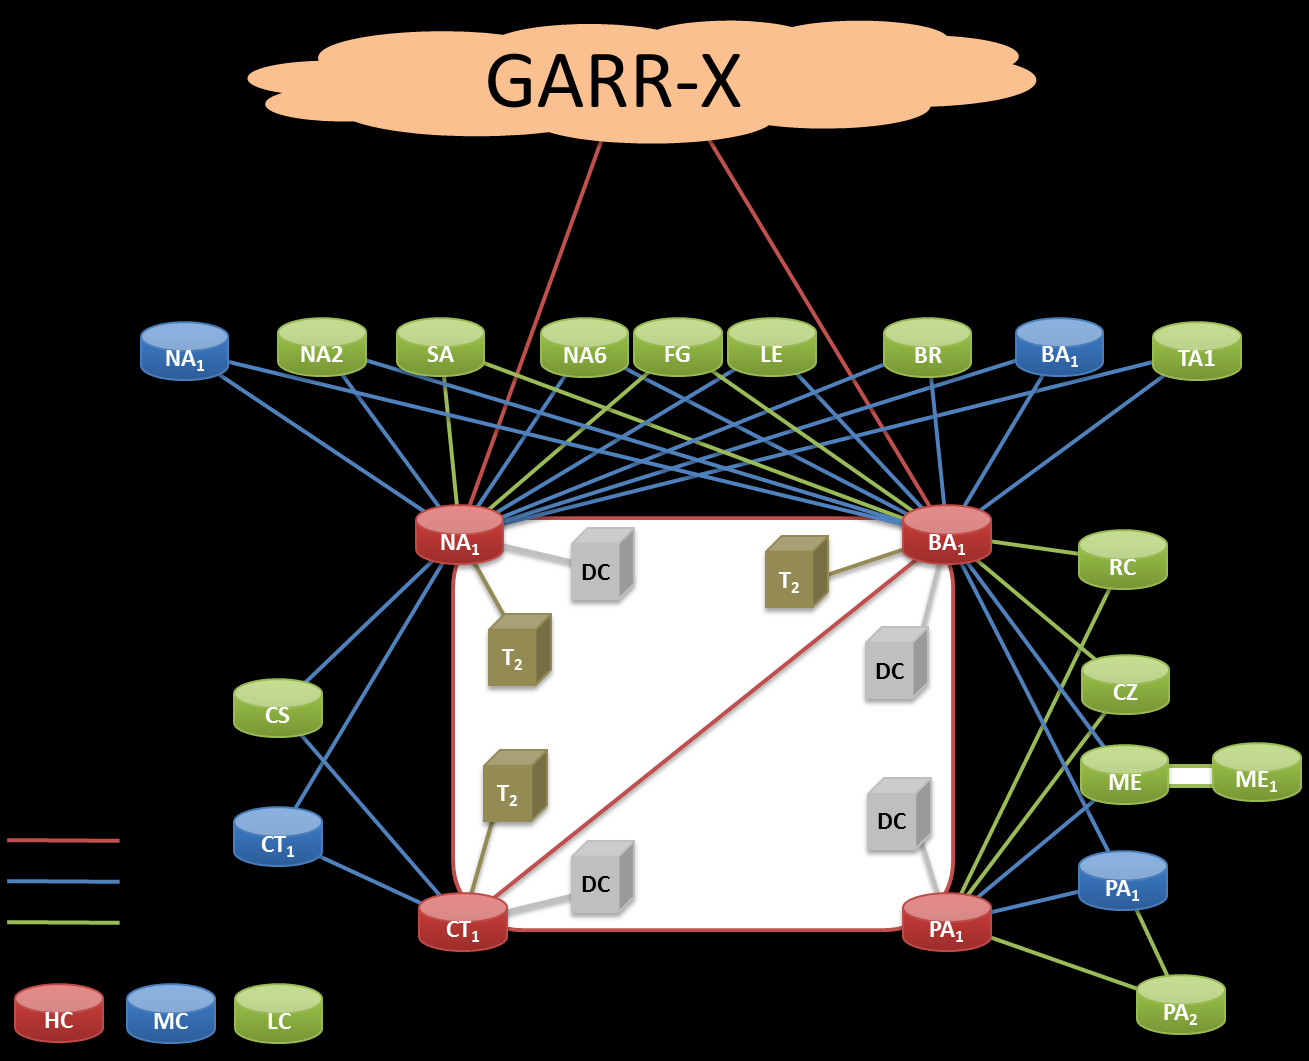 4 CONSISTENZA DI RETE IP/MPLS IN GARRX PROGRESS La rete IP/MPLS di GARRX Progress si propone di espandere la rete GARRX al sud d Italia potenziandone e integrandone l infrastruttura nelle regioni di